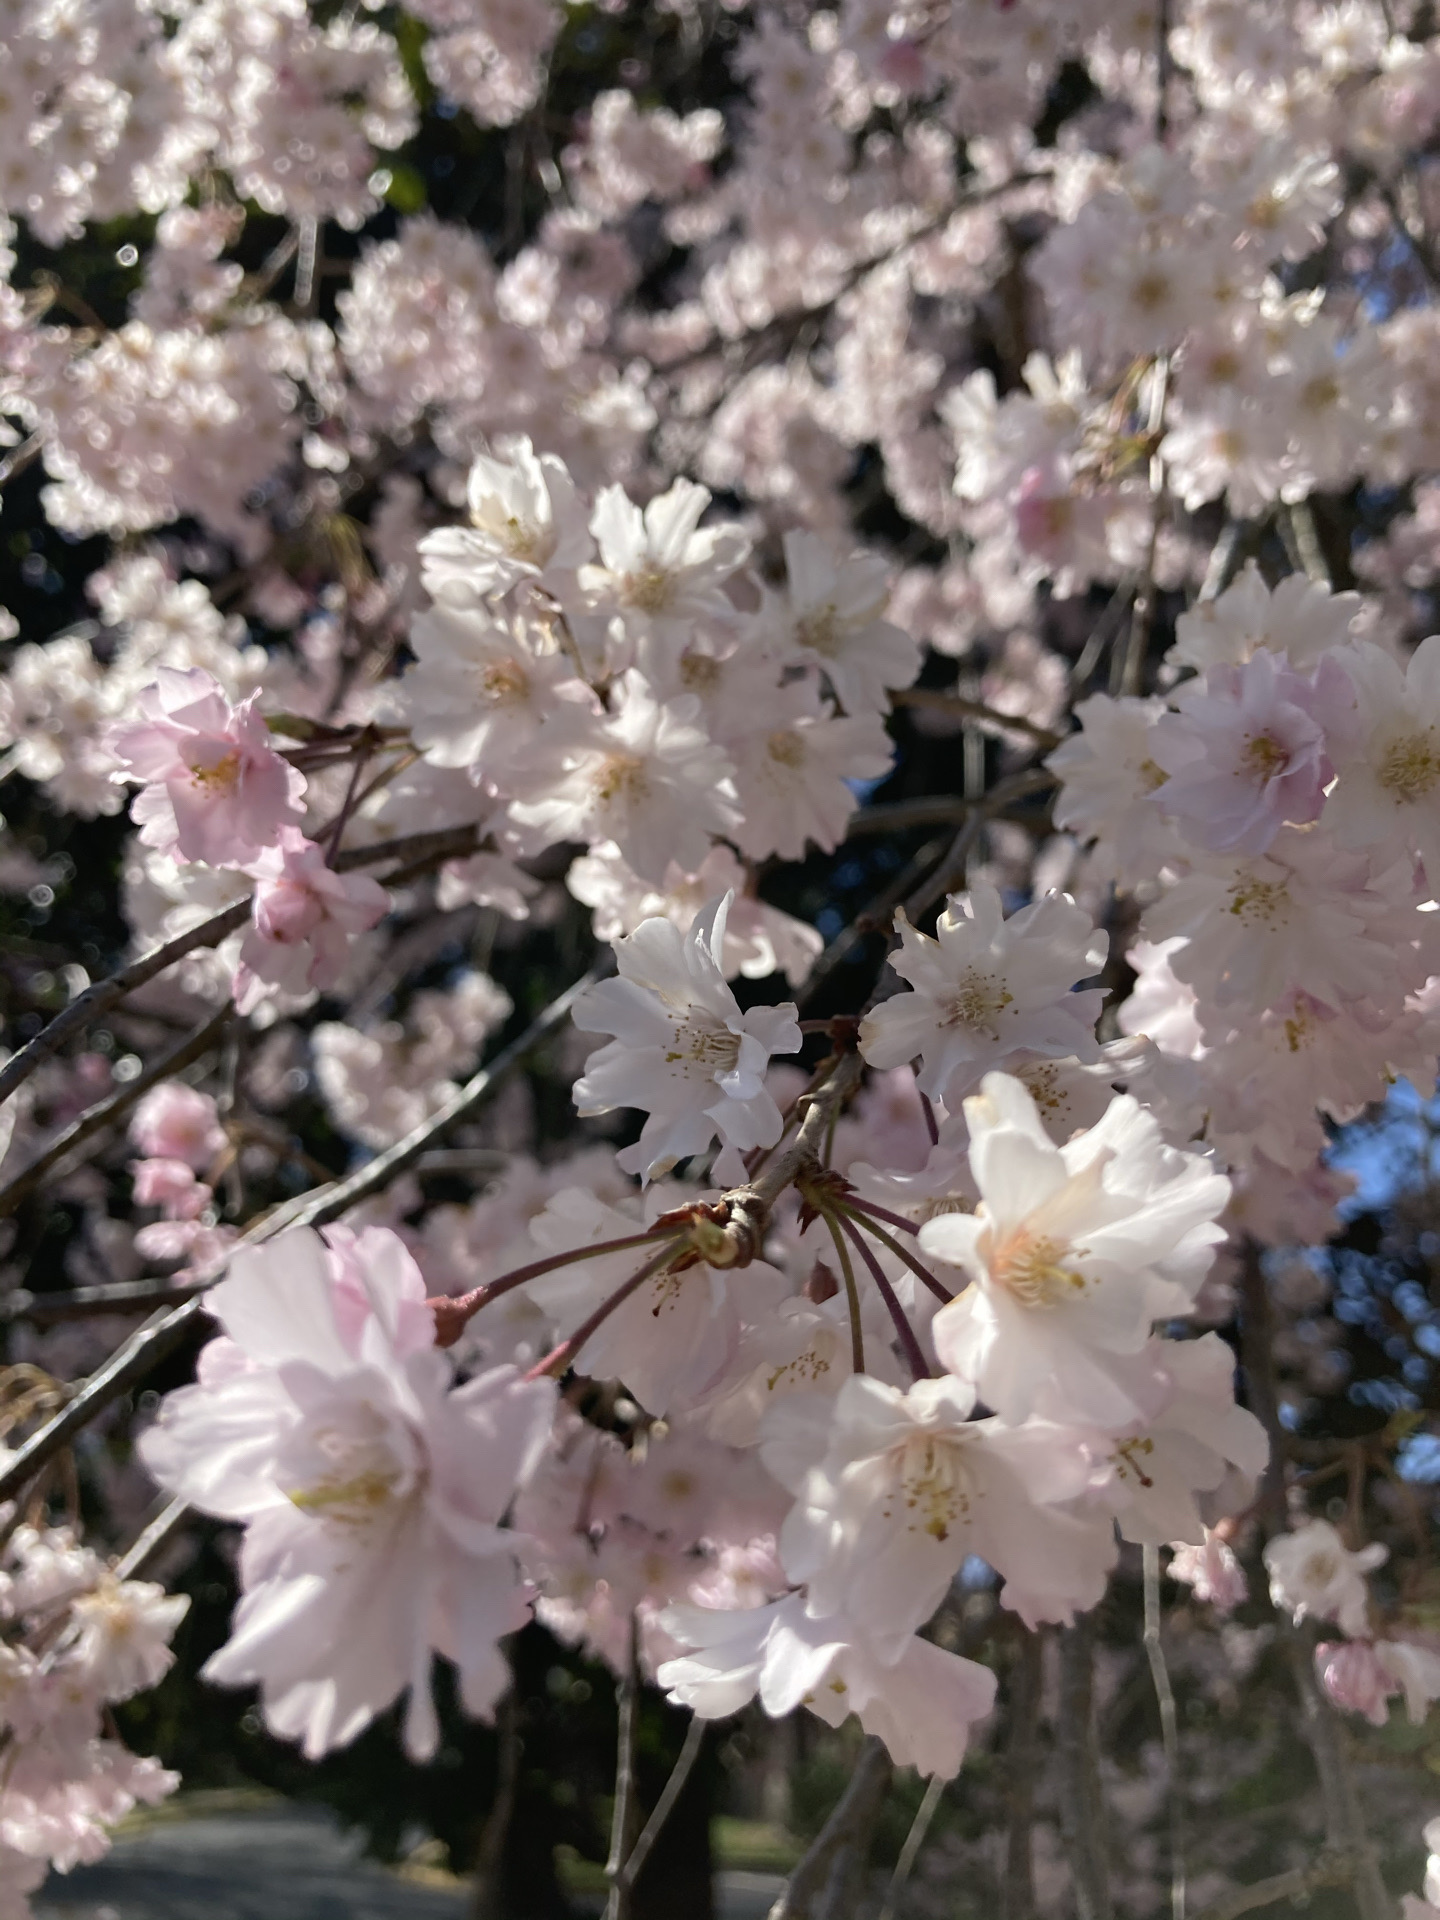 春日赏樱花，去年错过了，今年天时正好，到处都繁花盛放，如入人间桃源的居住小区，实在令人向往，宁静而绚